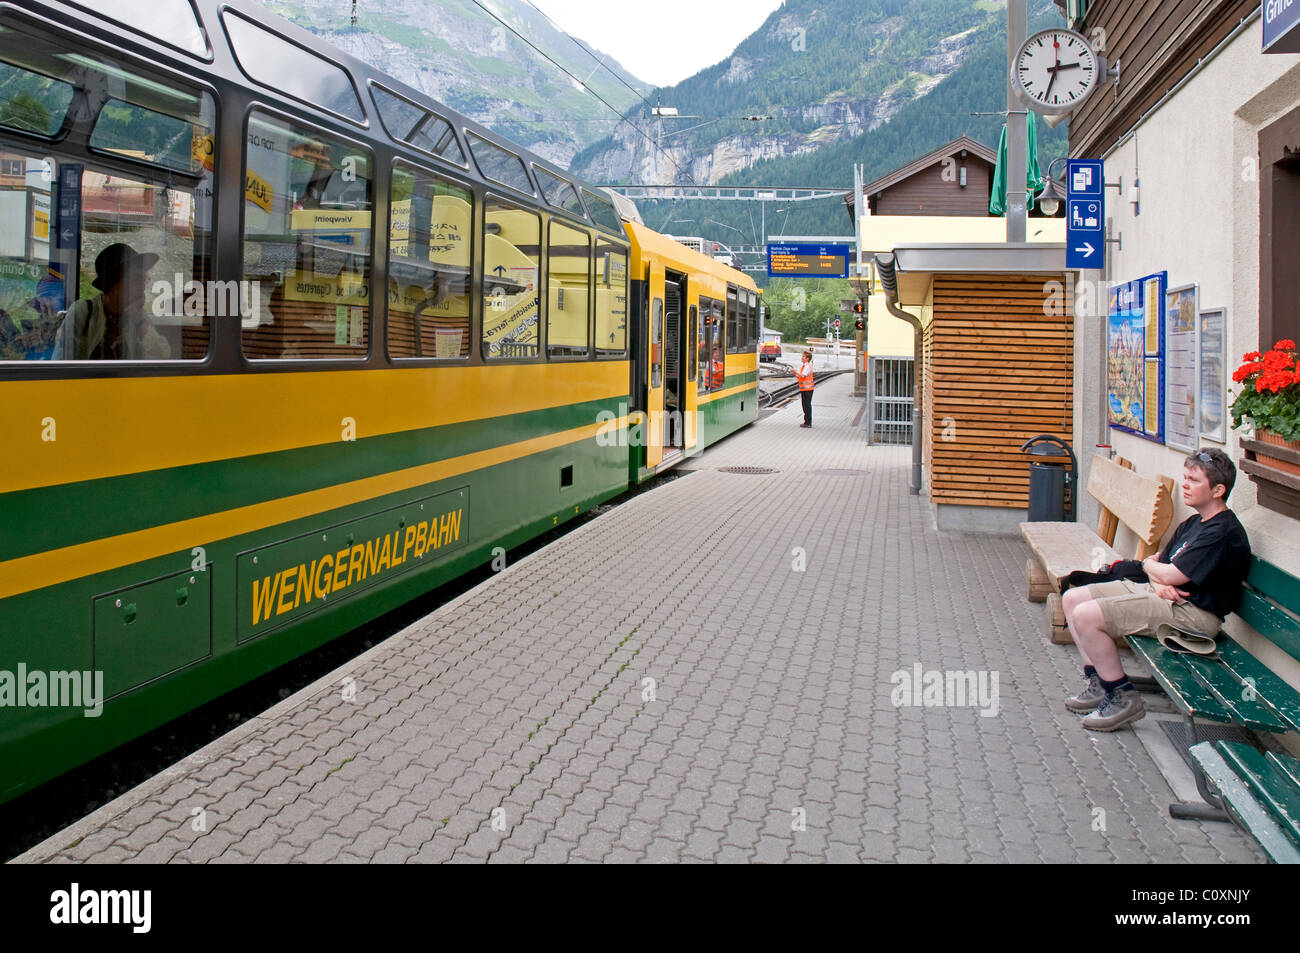 WengernalpbahnTrain at Grund, Switzerland, departing for Kleine Scheidegg Stock Photo